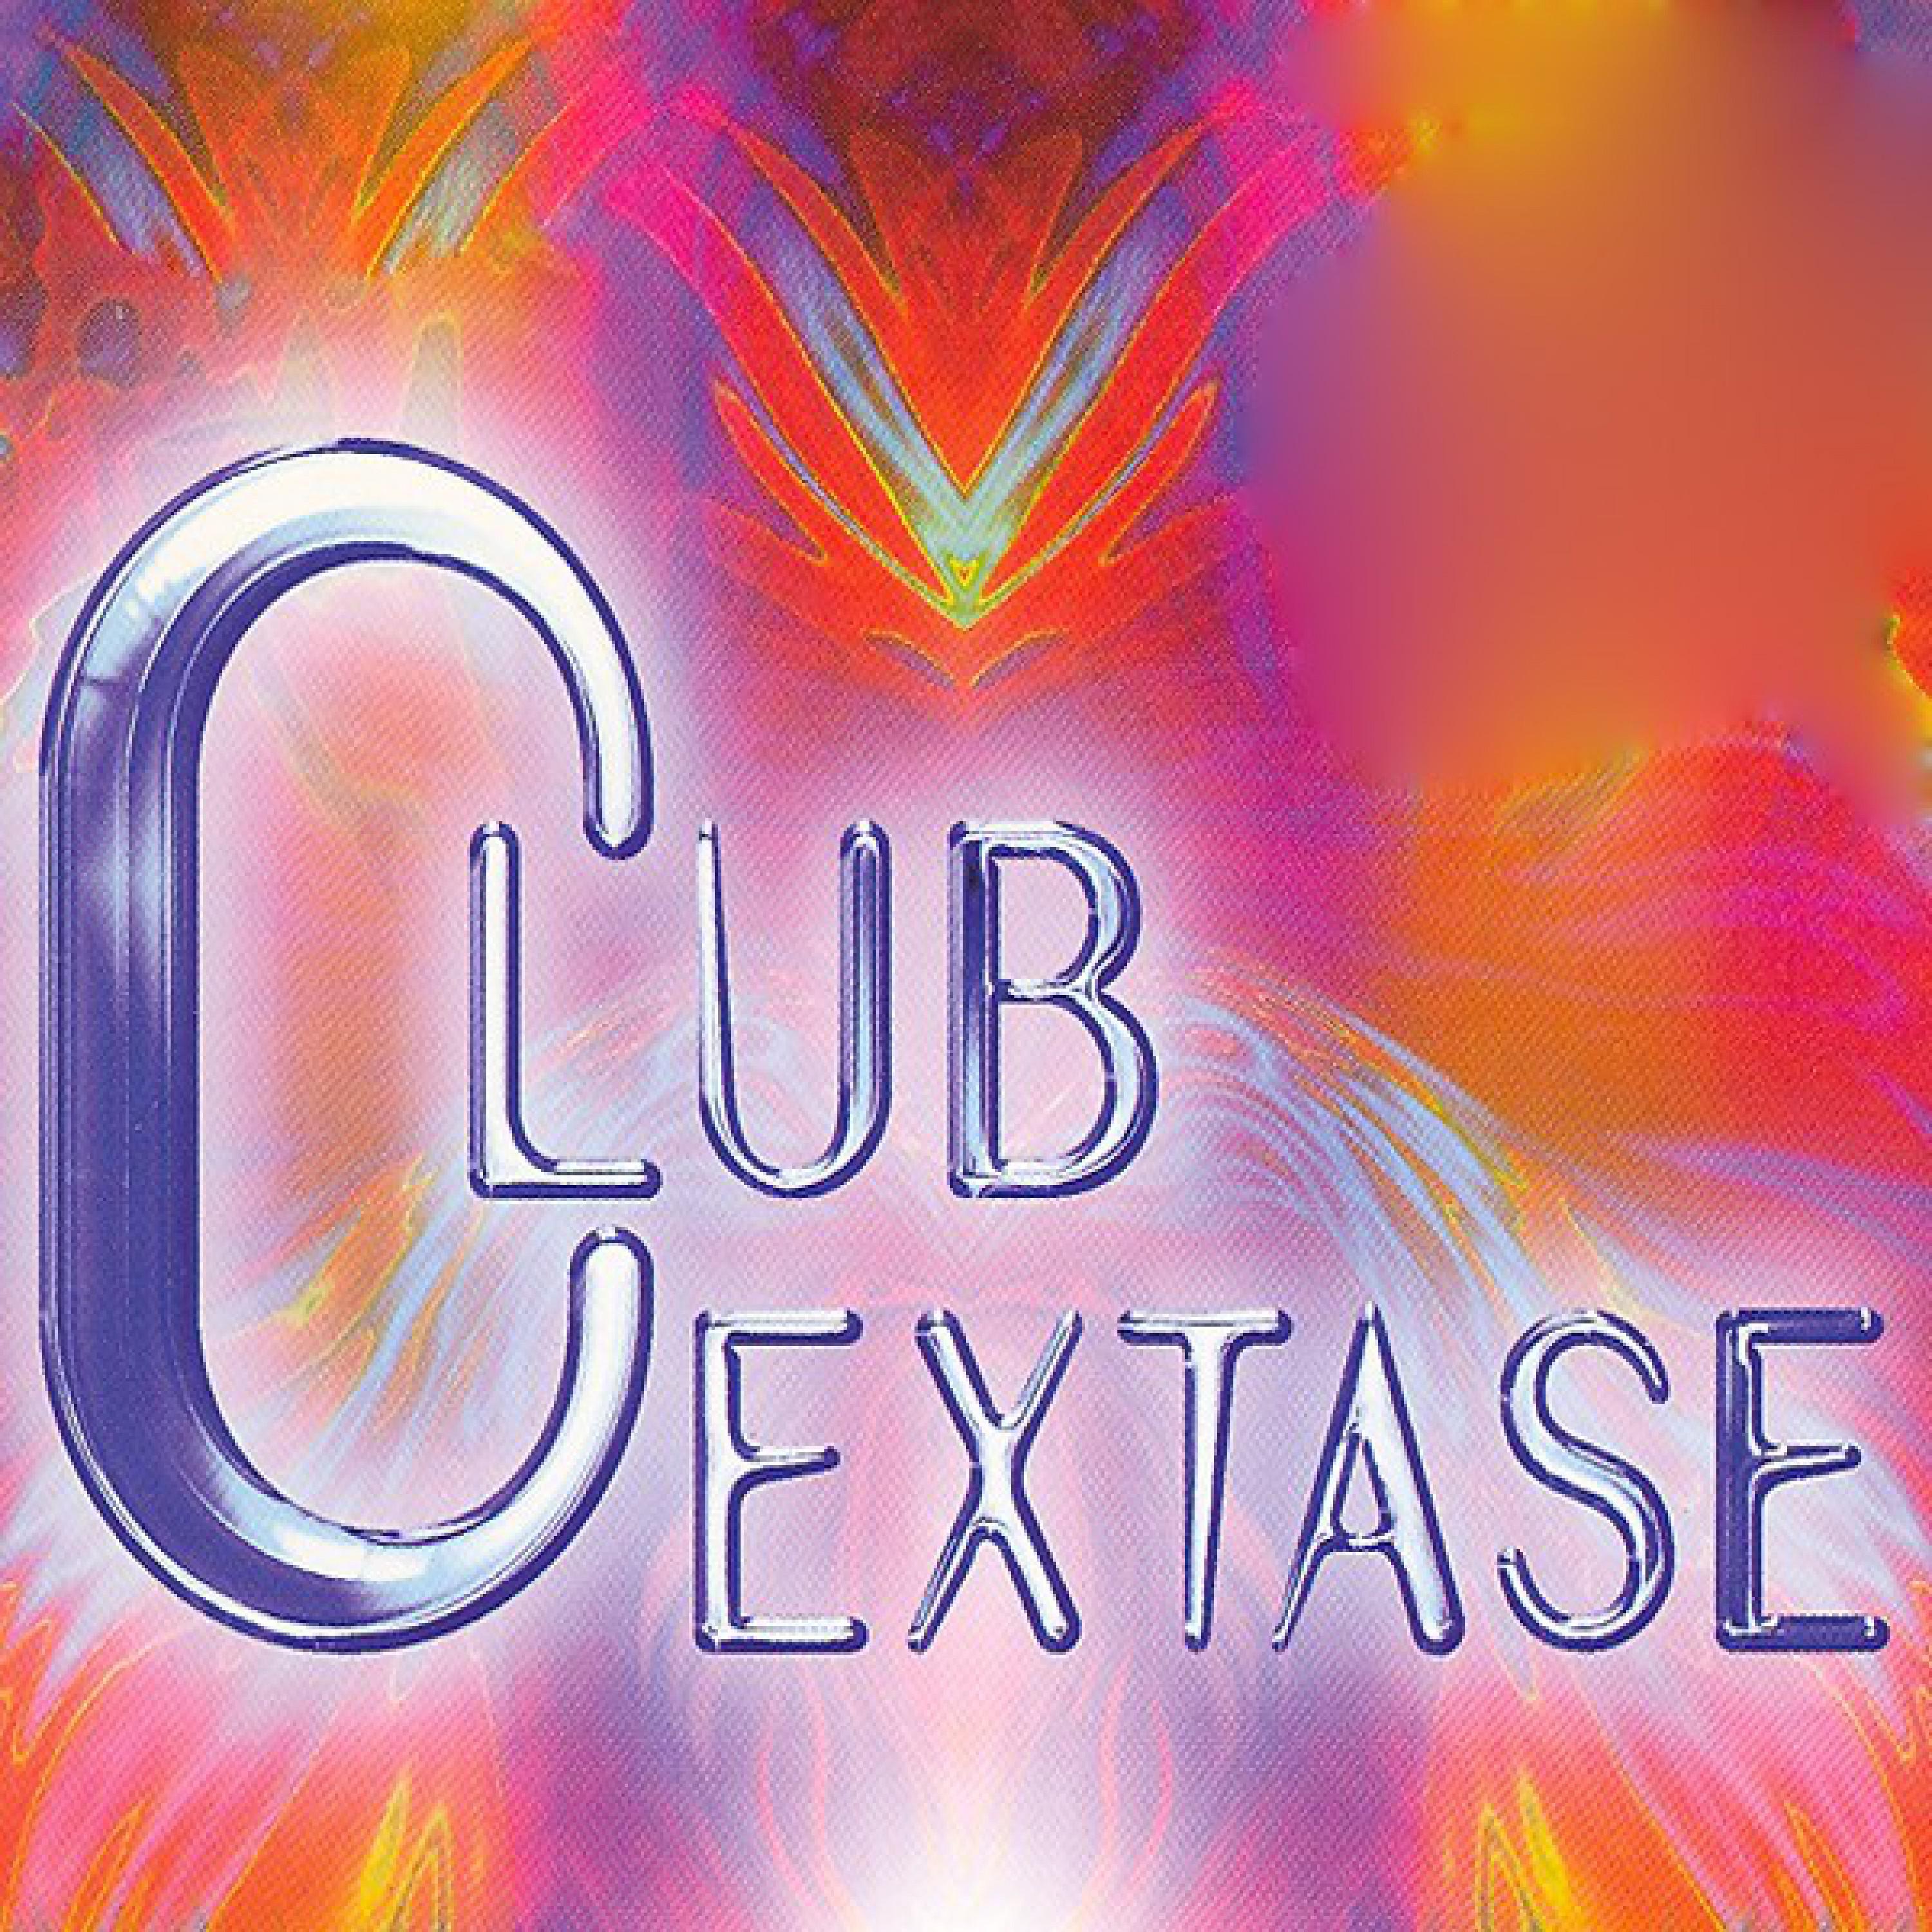 Club Extase